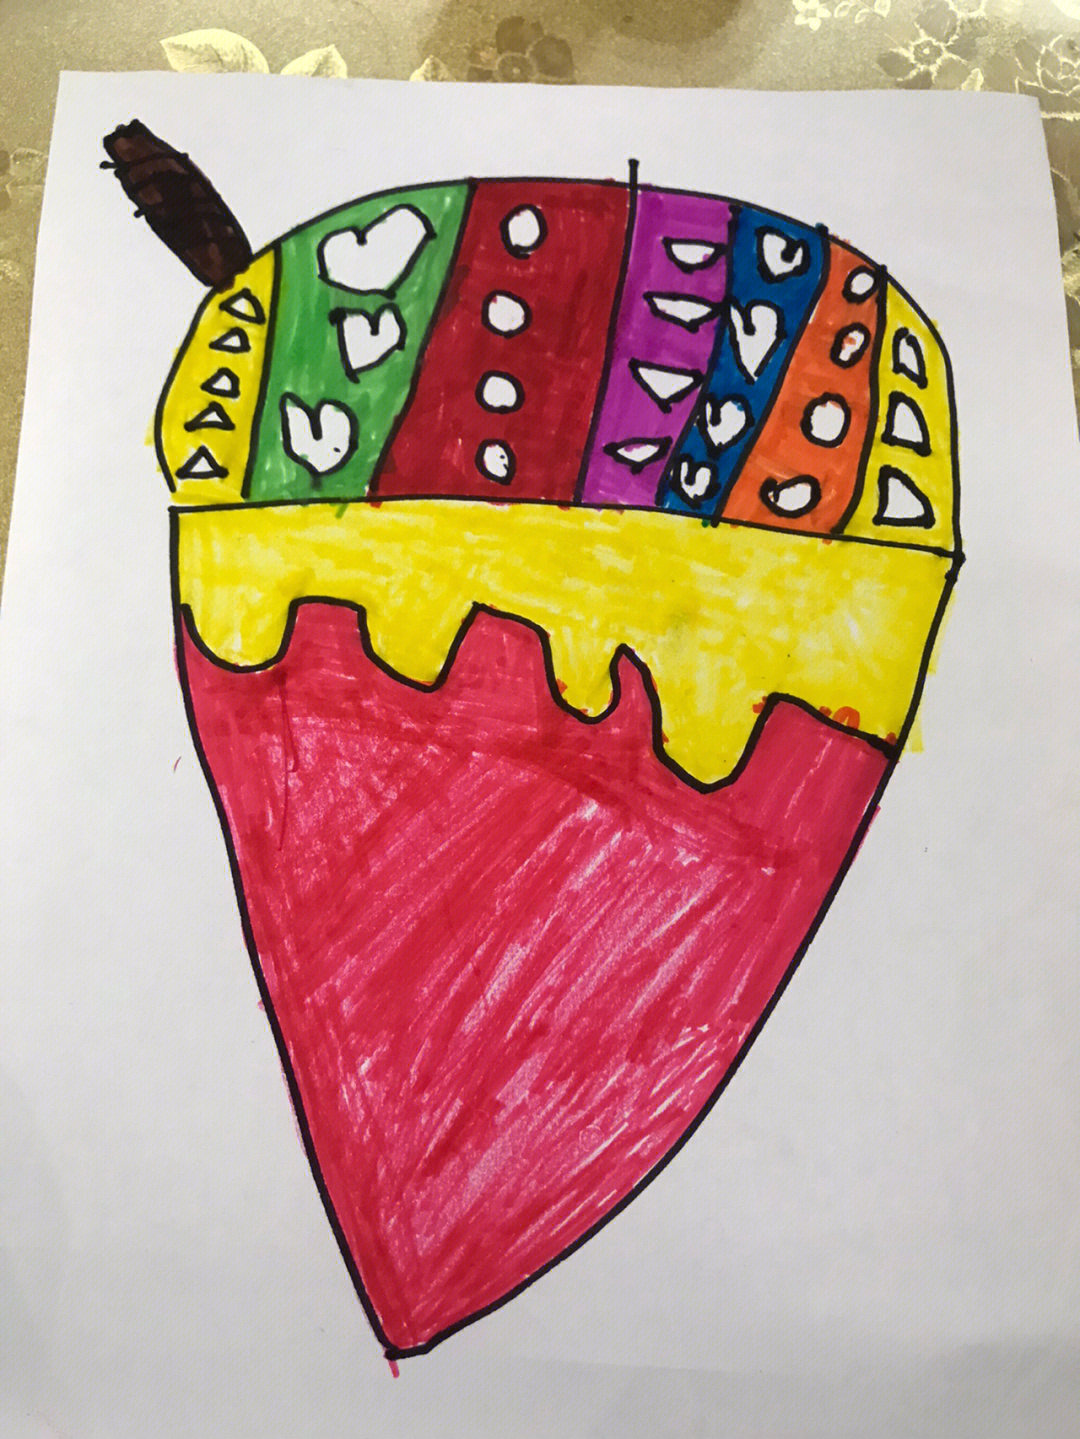 小班美术教案冰淇淋图片